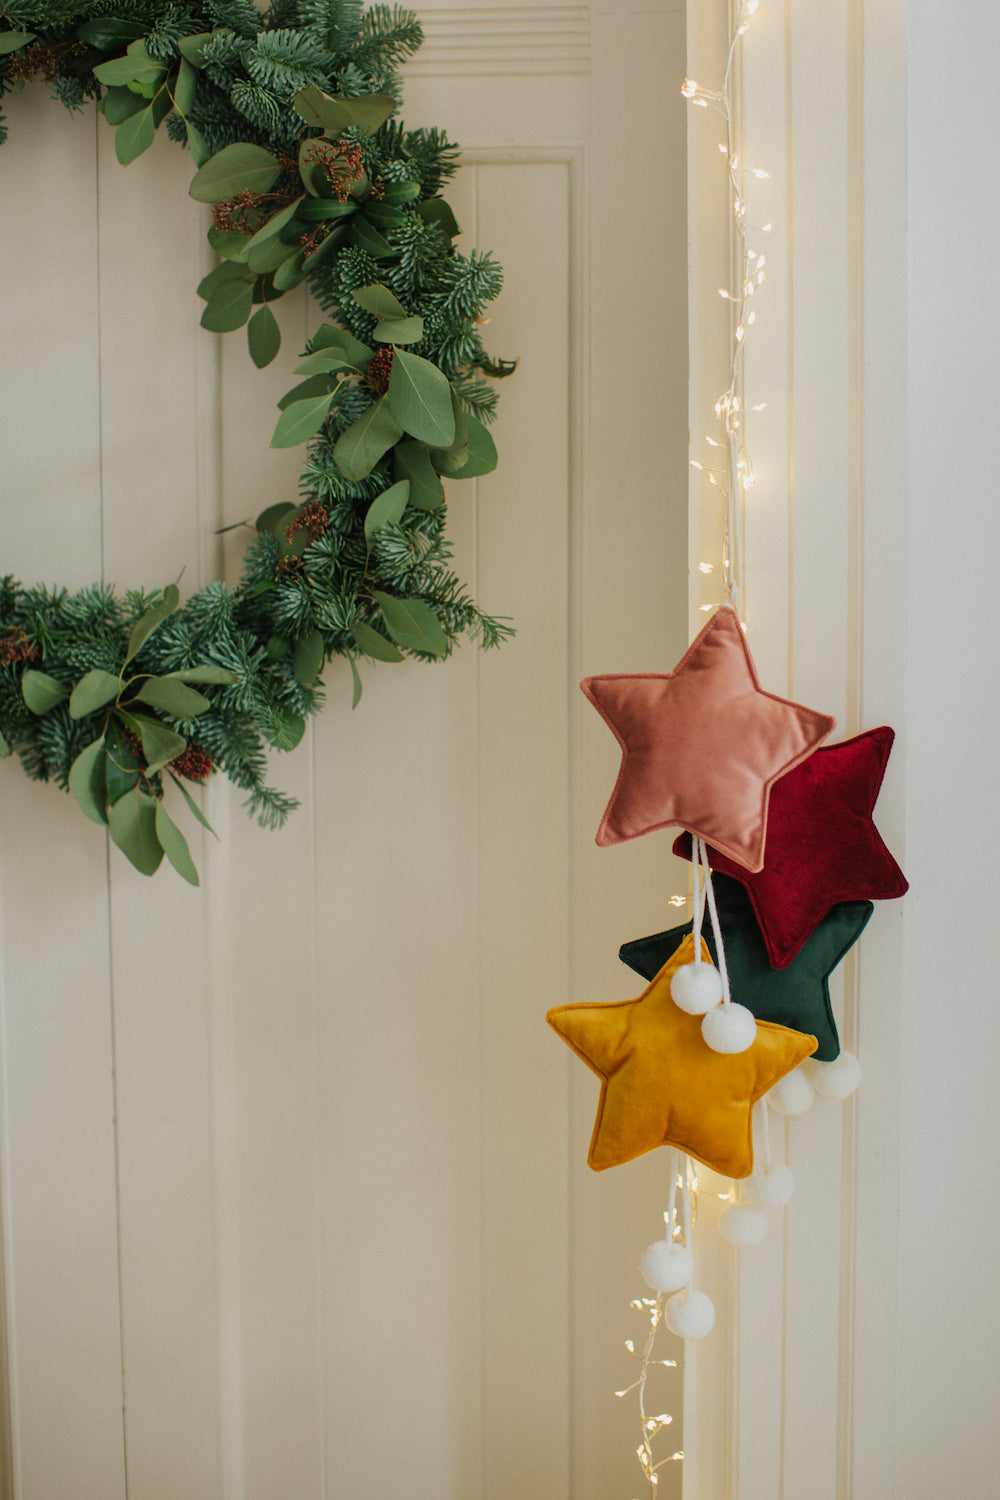 małe zawieszki gwiazdki z pomponami od bettys home wiszące na futrynie drzwi jako dekoracja świąteczna 